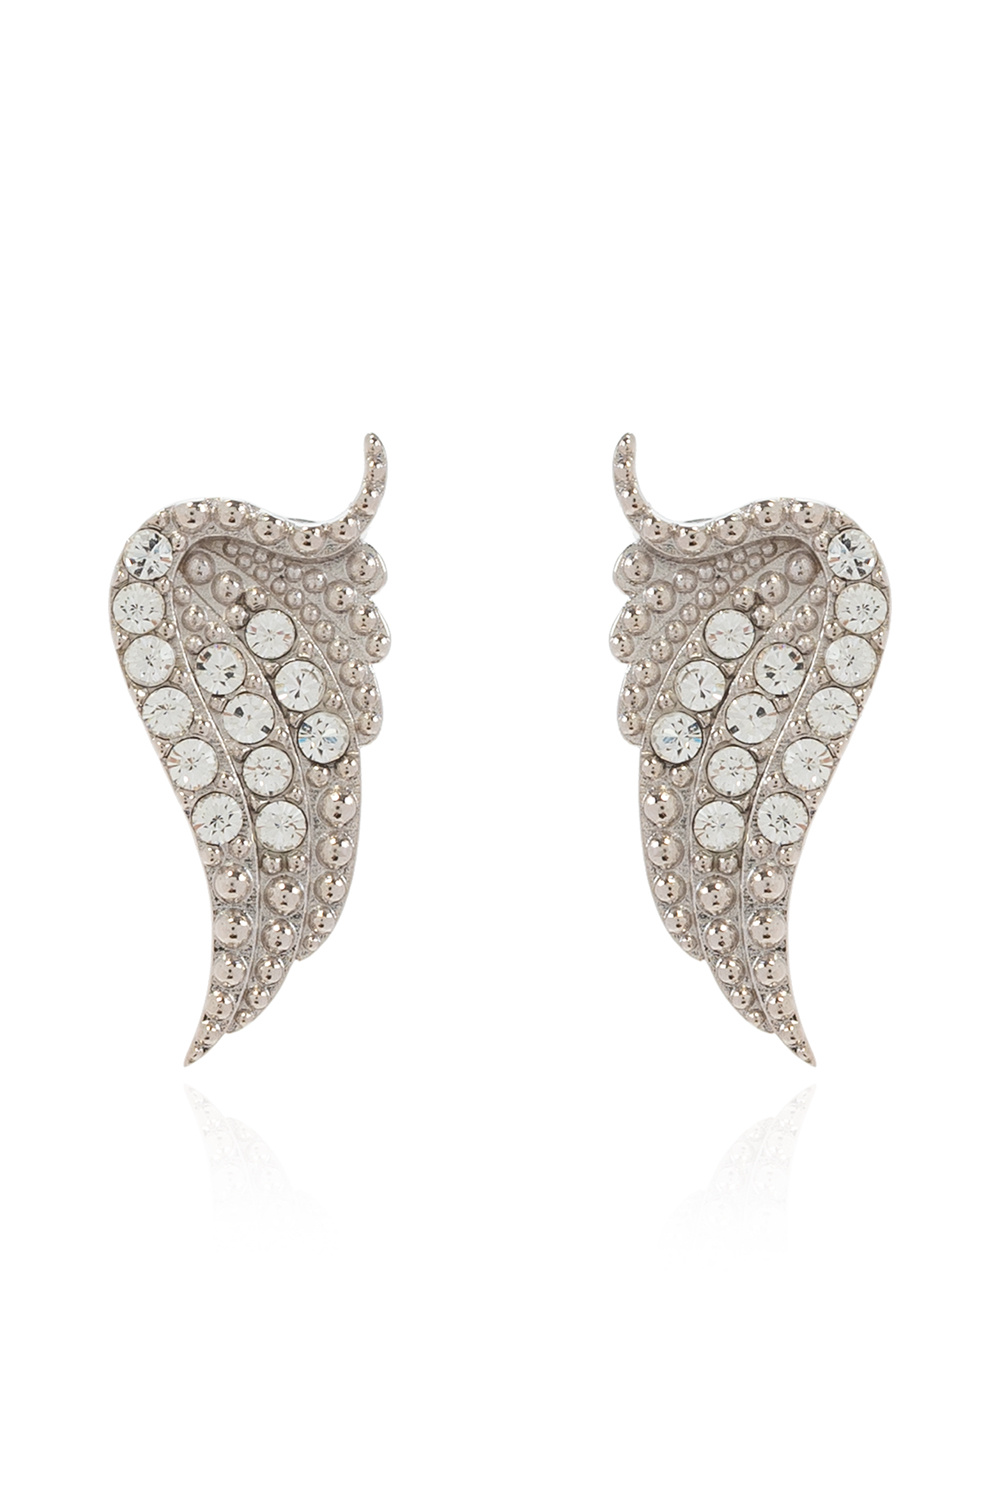 Zadig & Voltaire ‘Rock’ earrings